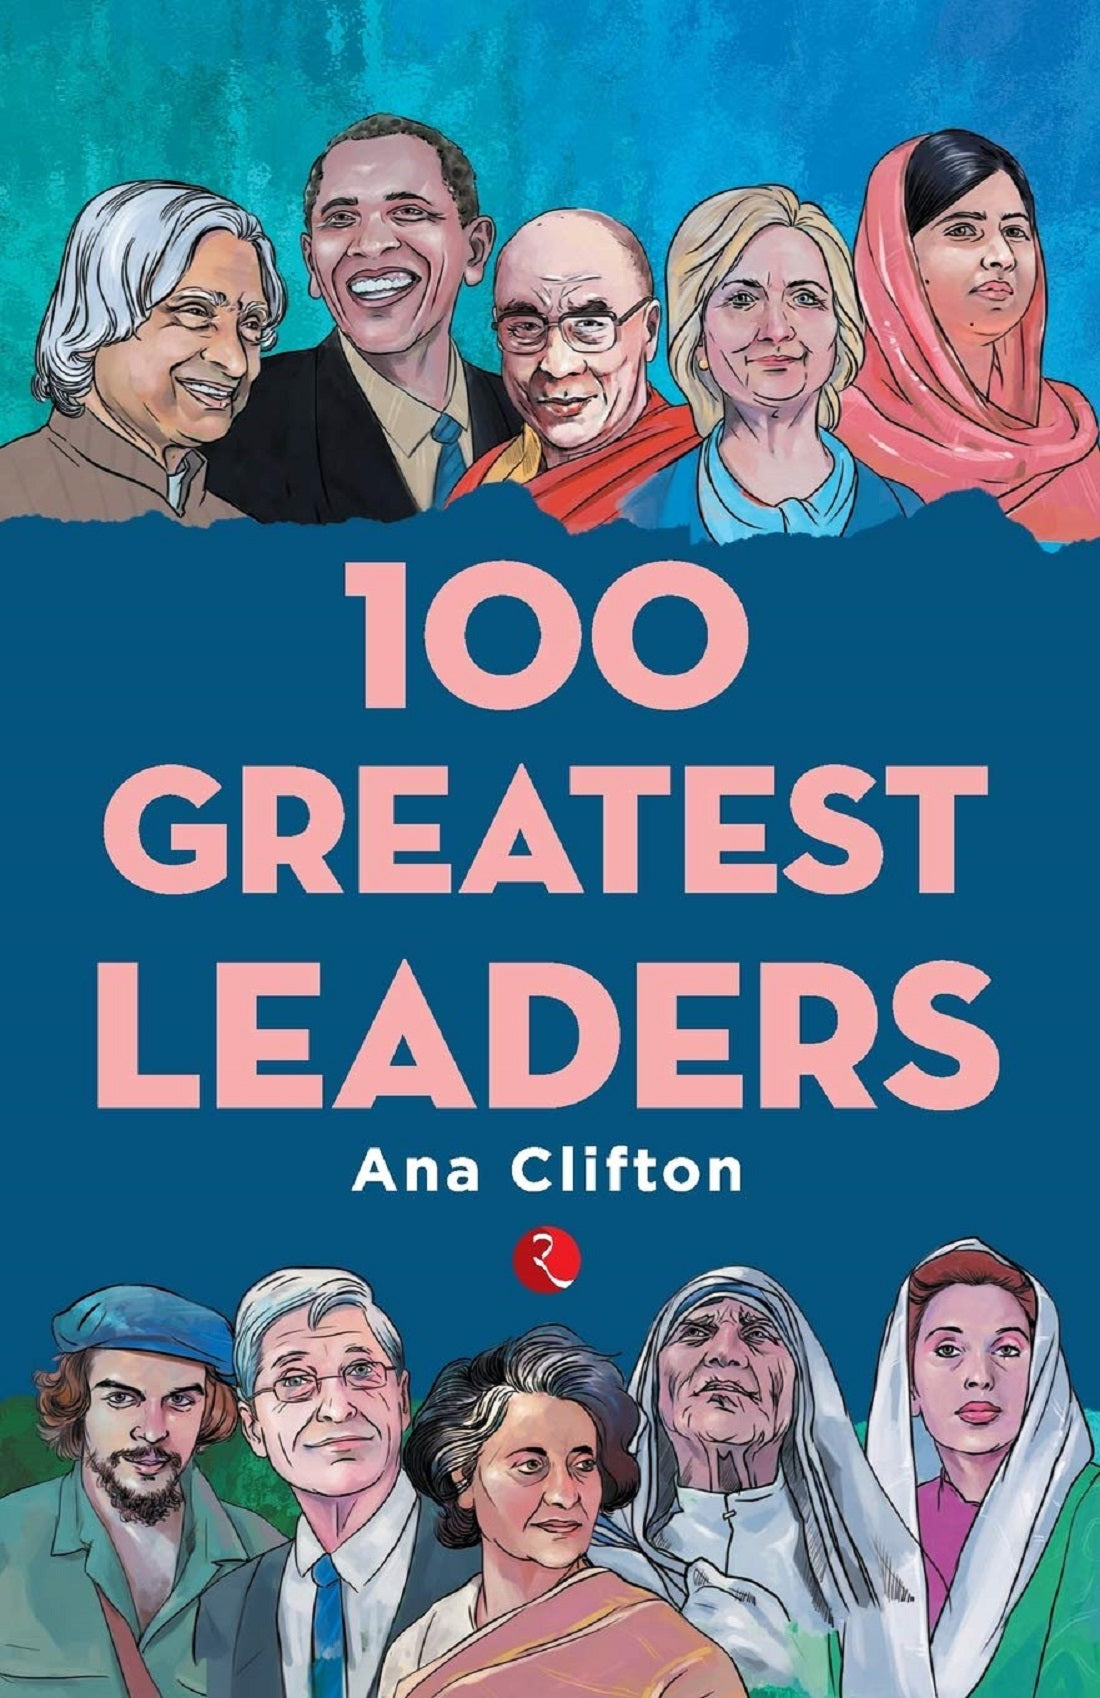 100 GREATEST LEADERS